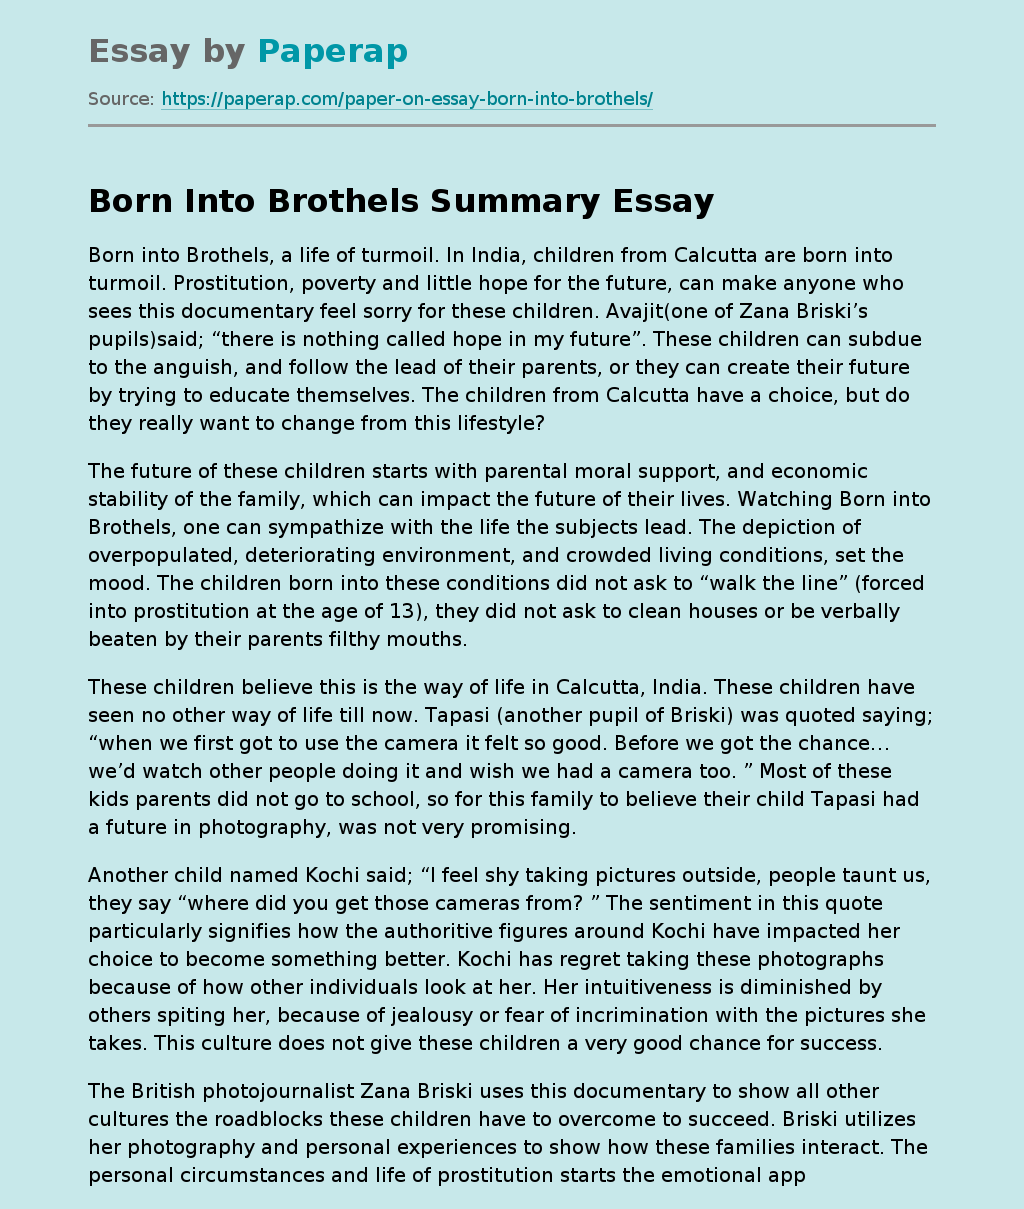 Born Into Brothels Summary